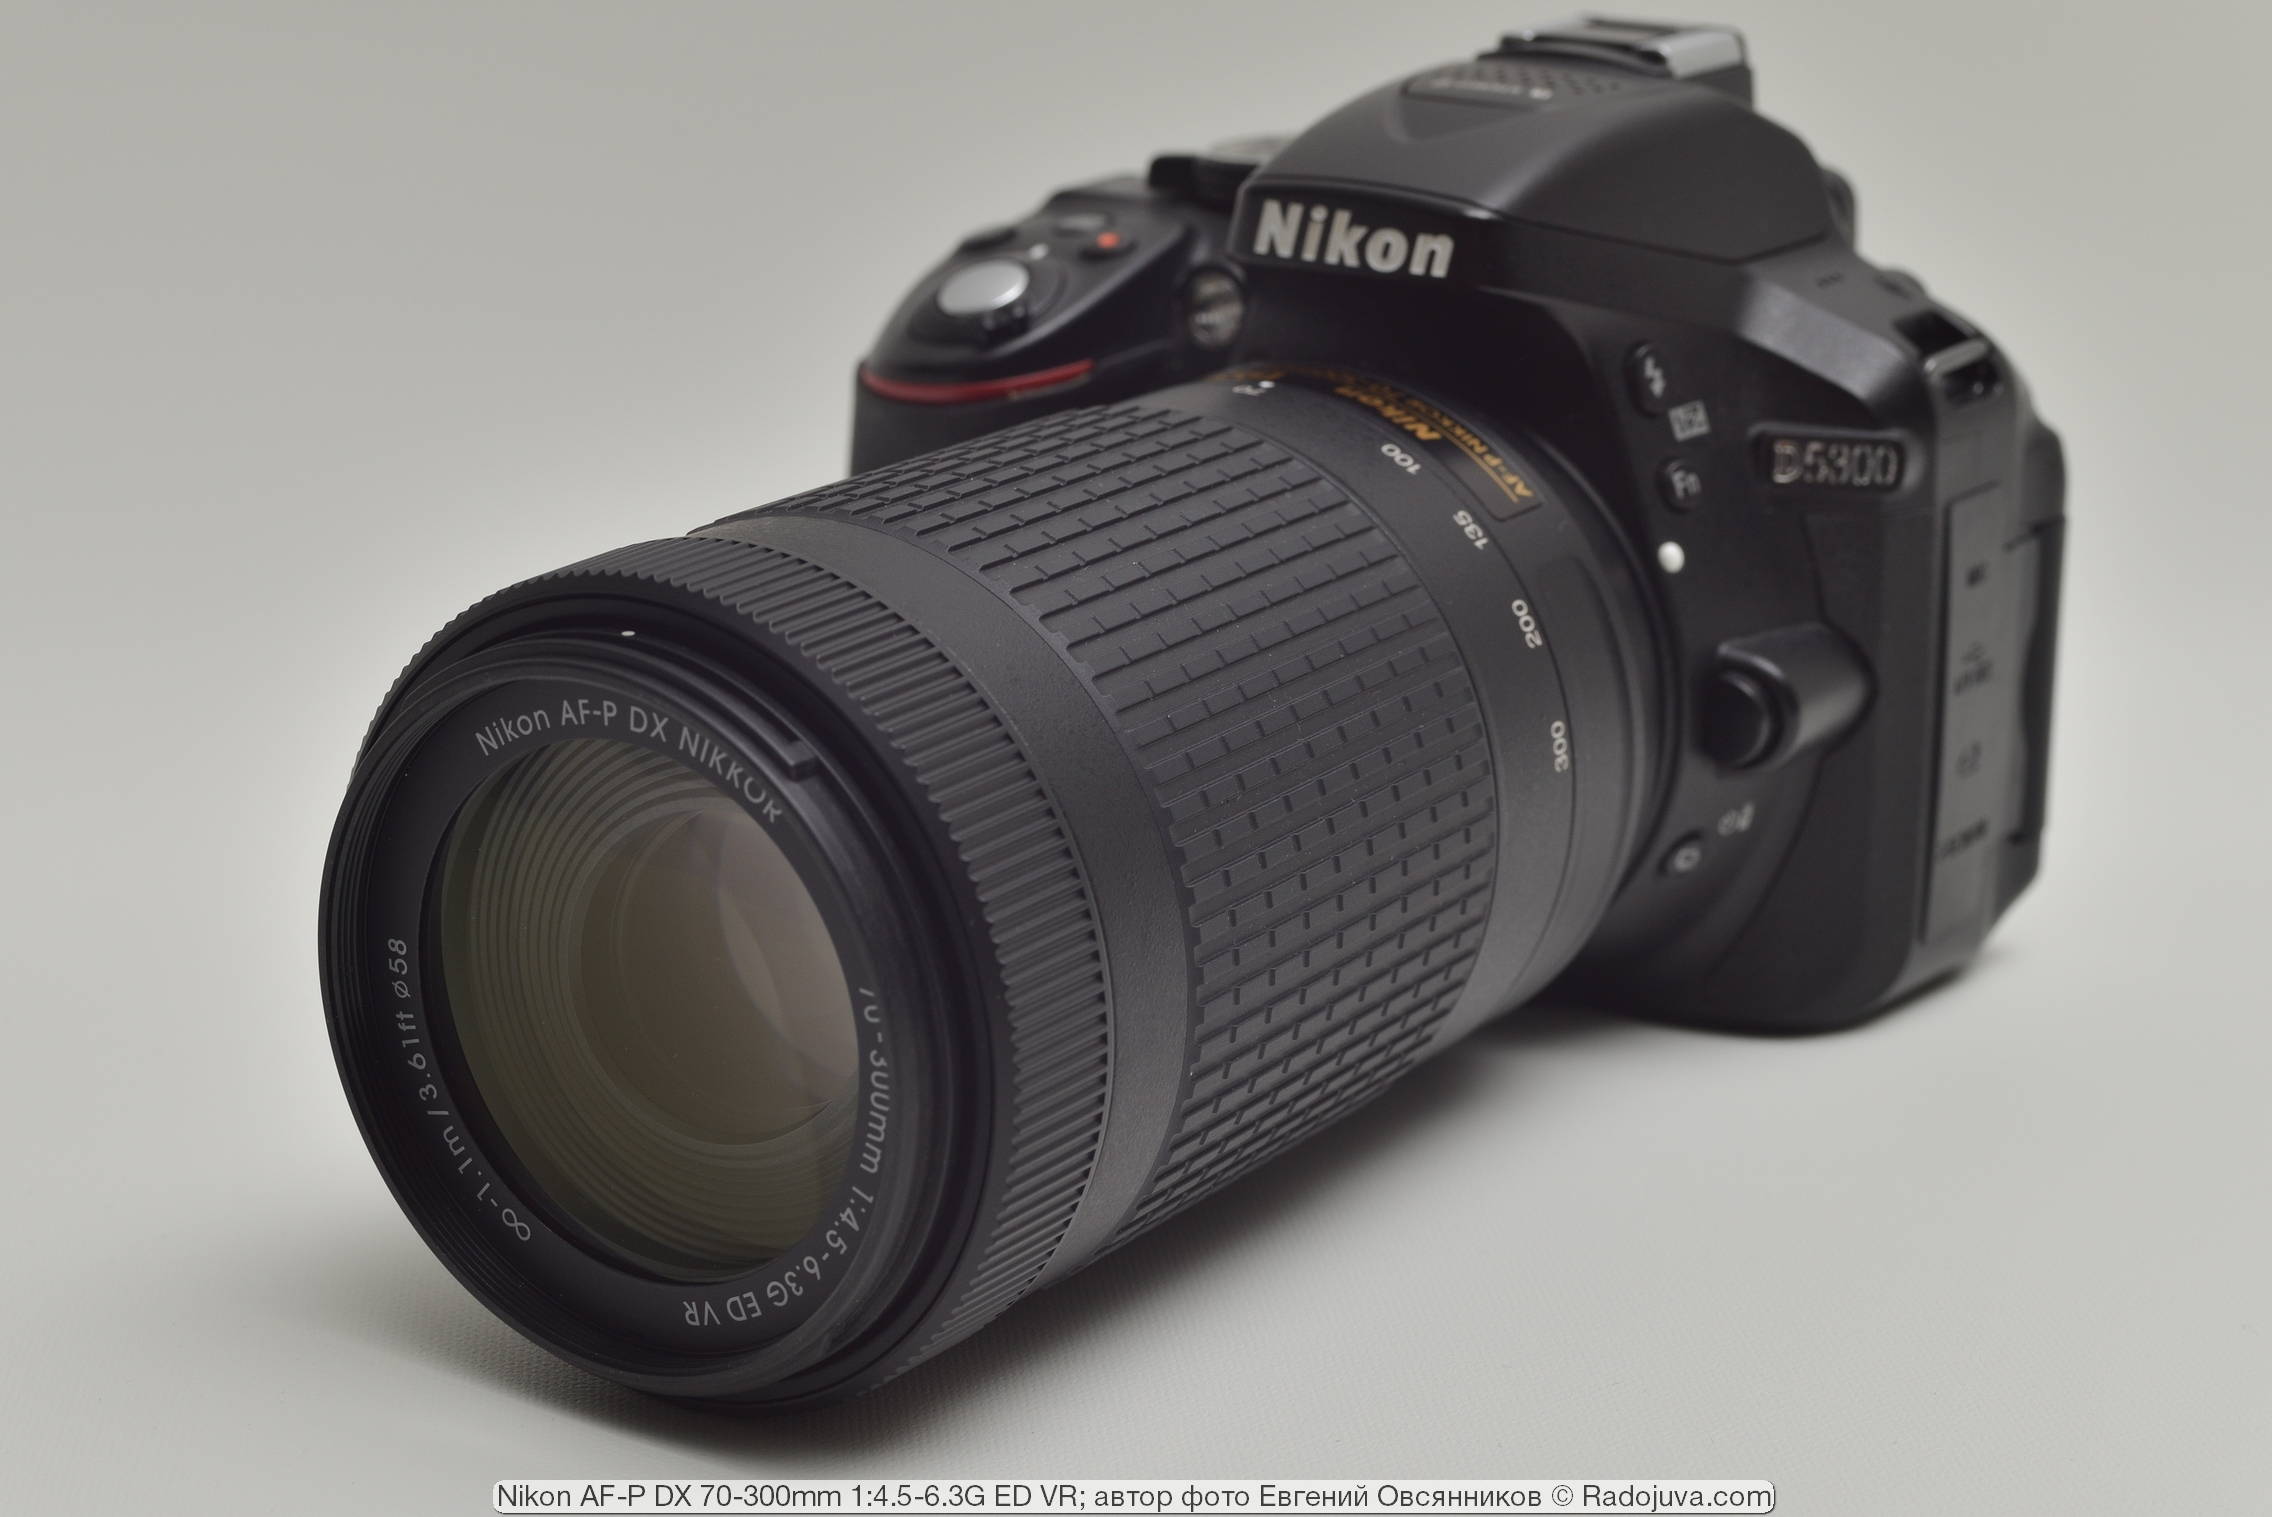 Nikon Af P Dx Nikkor 70 300mm 1 4 5 6 3g Ed Vr Review From The Reader Radozhiva Happy